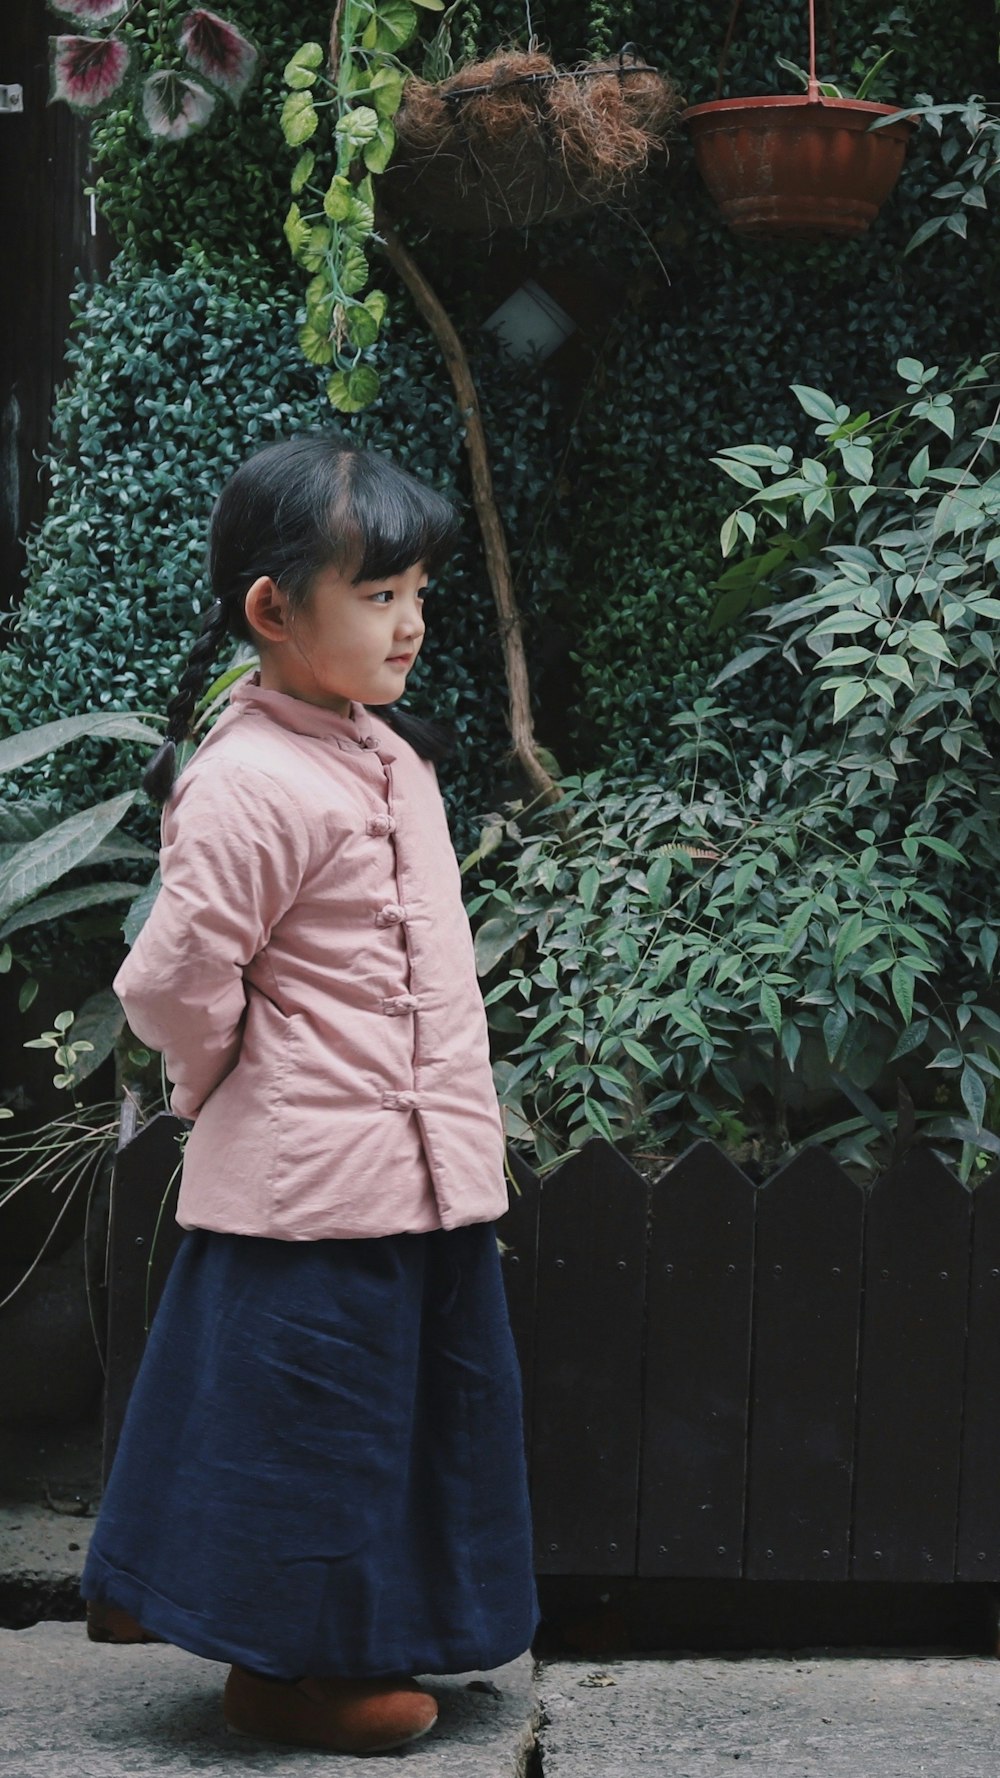 fille portant une veste rose près des plantes